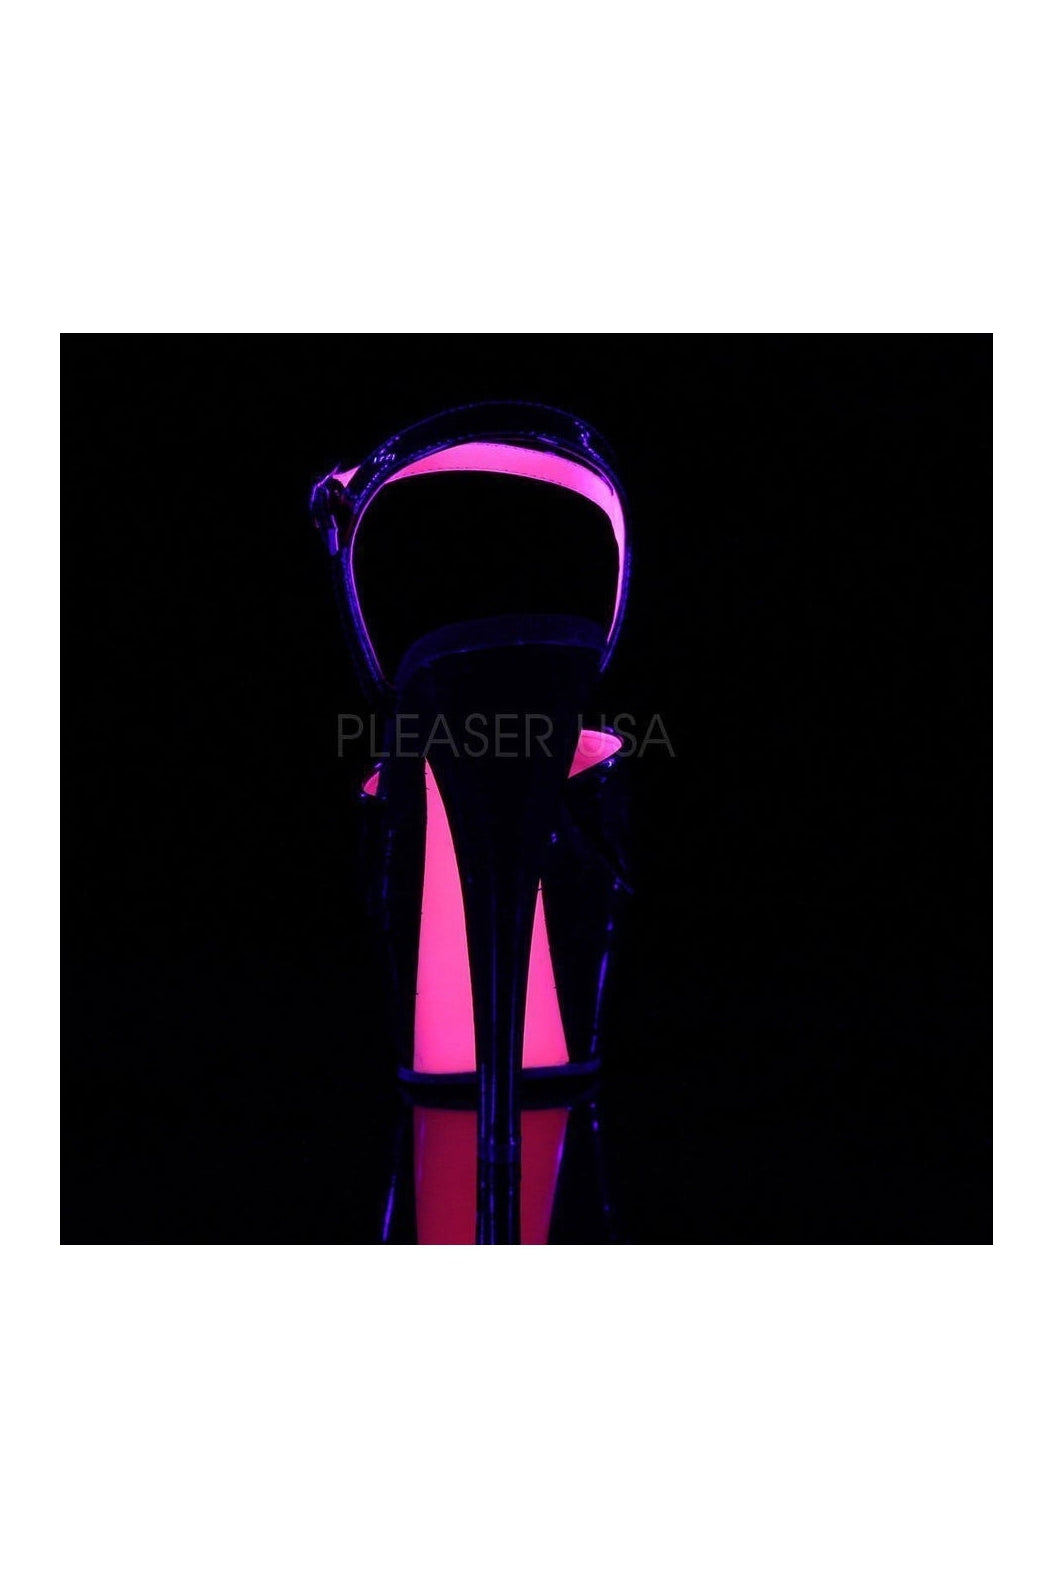 KISS-209TT Platform Sandal | Black Patent-Pleaser-Sandals-SEXYSHOES.COM